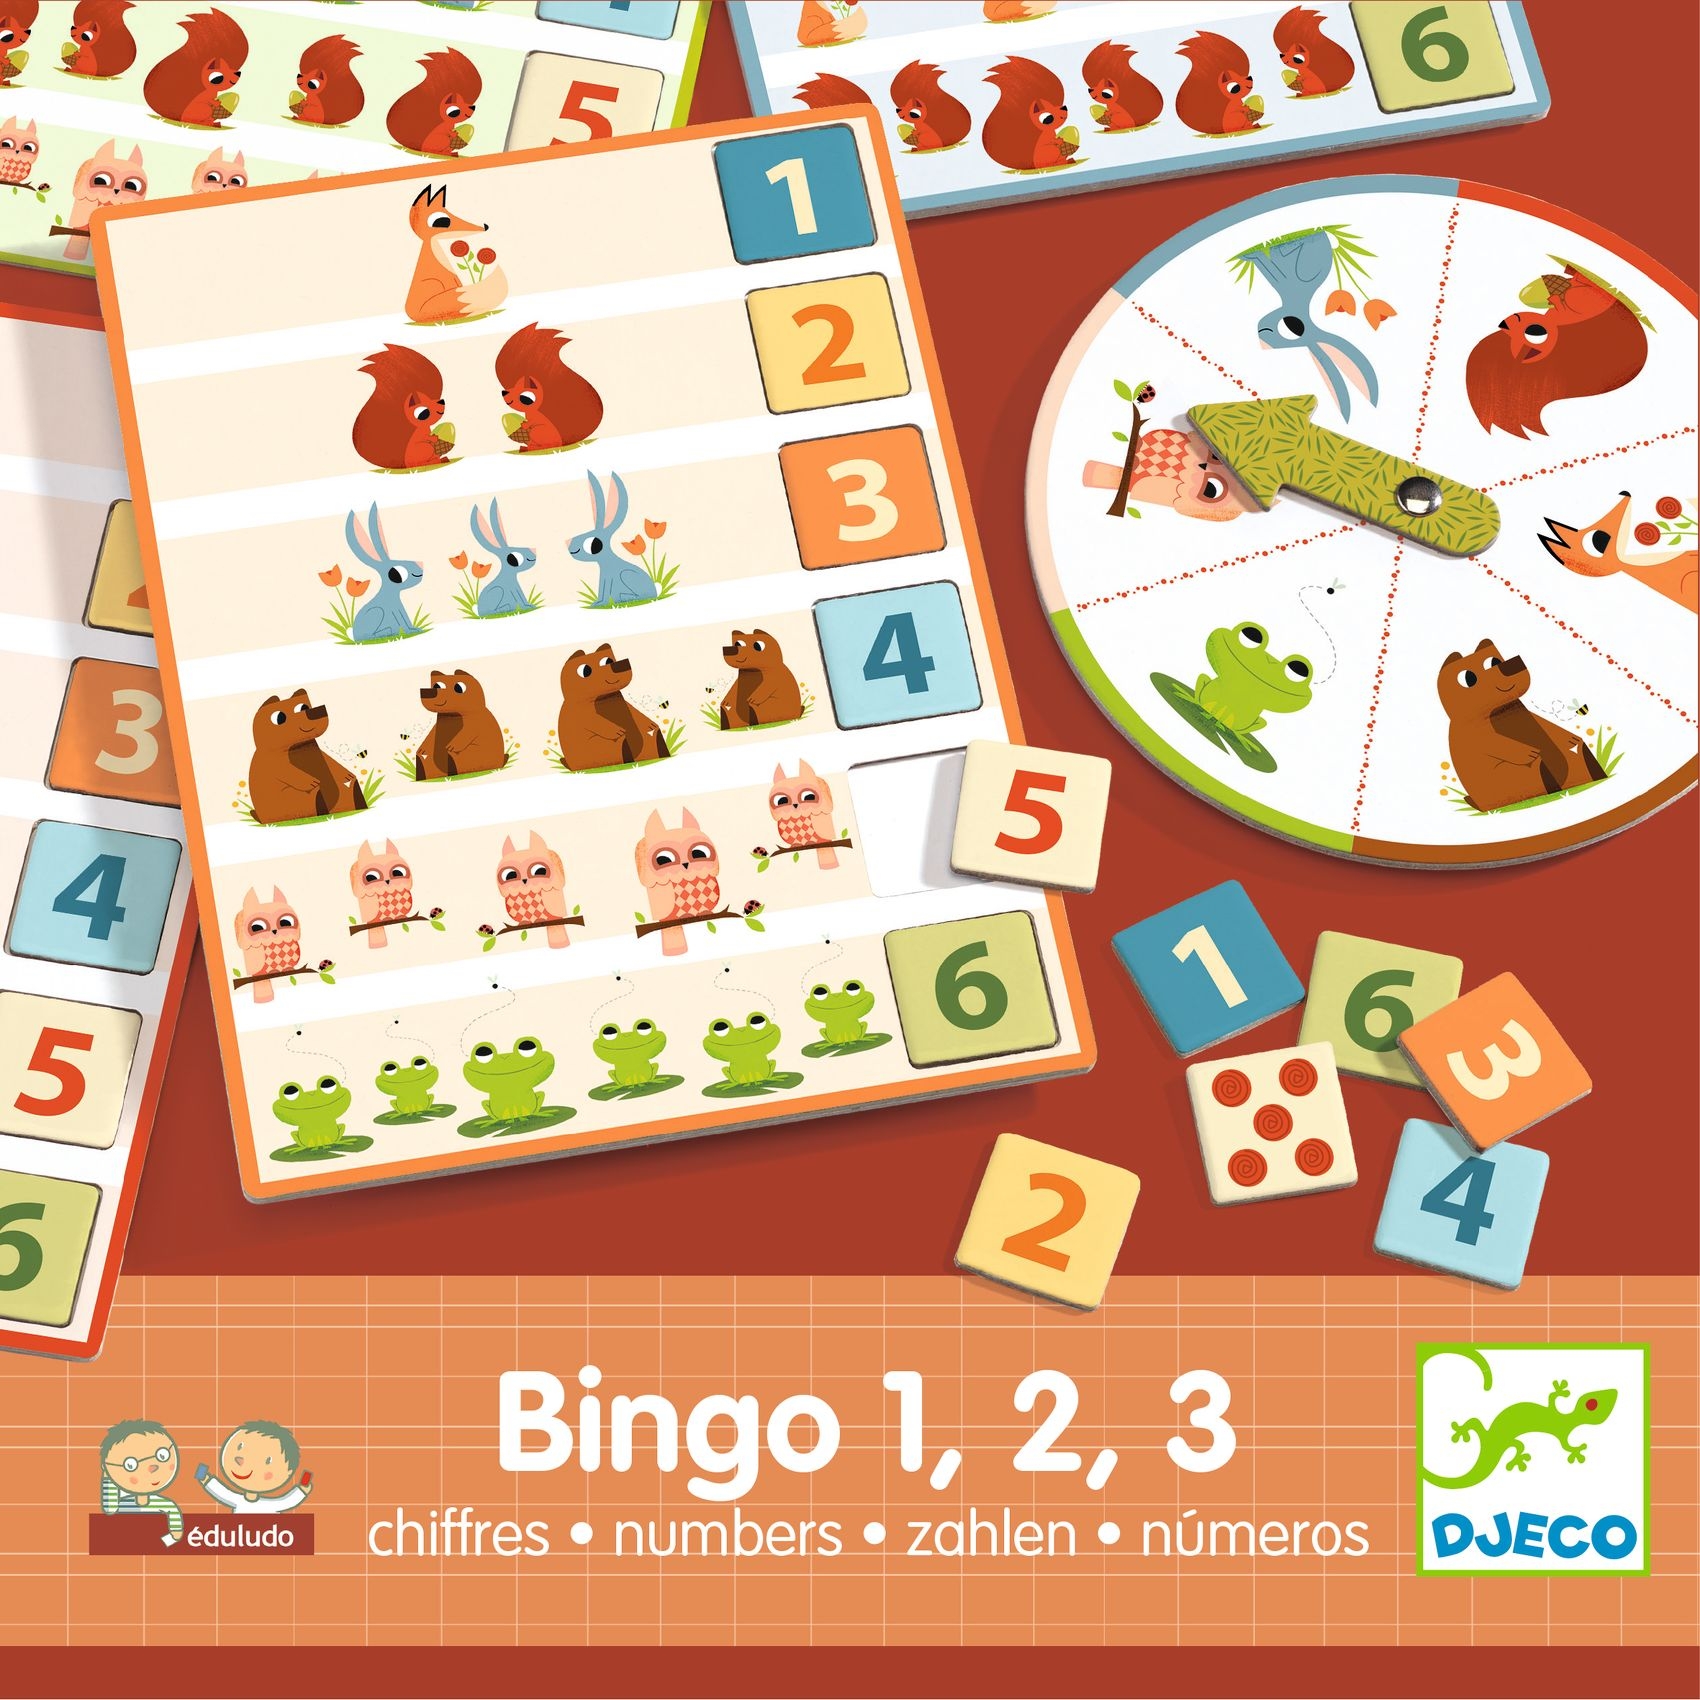 Fejlesztő játék - Bingó a számokkal - Eduludo Bingo 1, 2, 3 numbers - 2